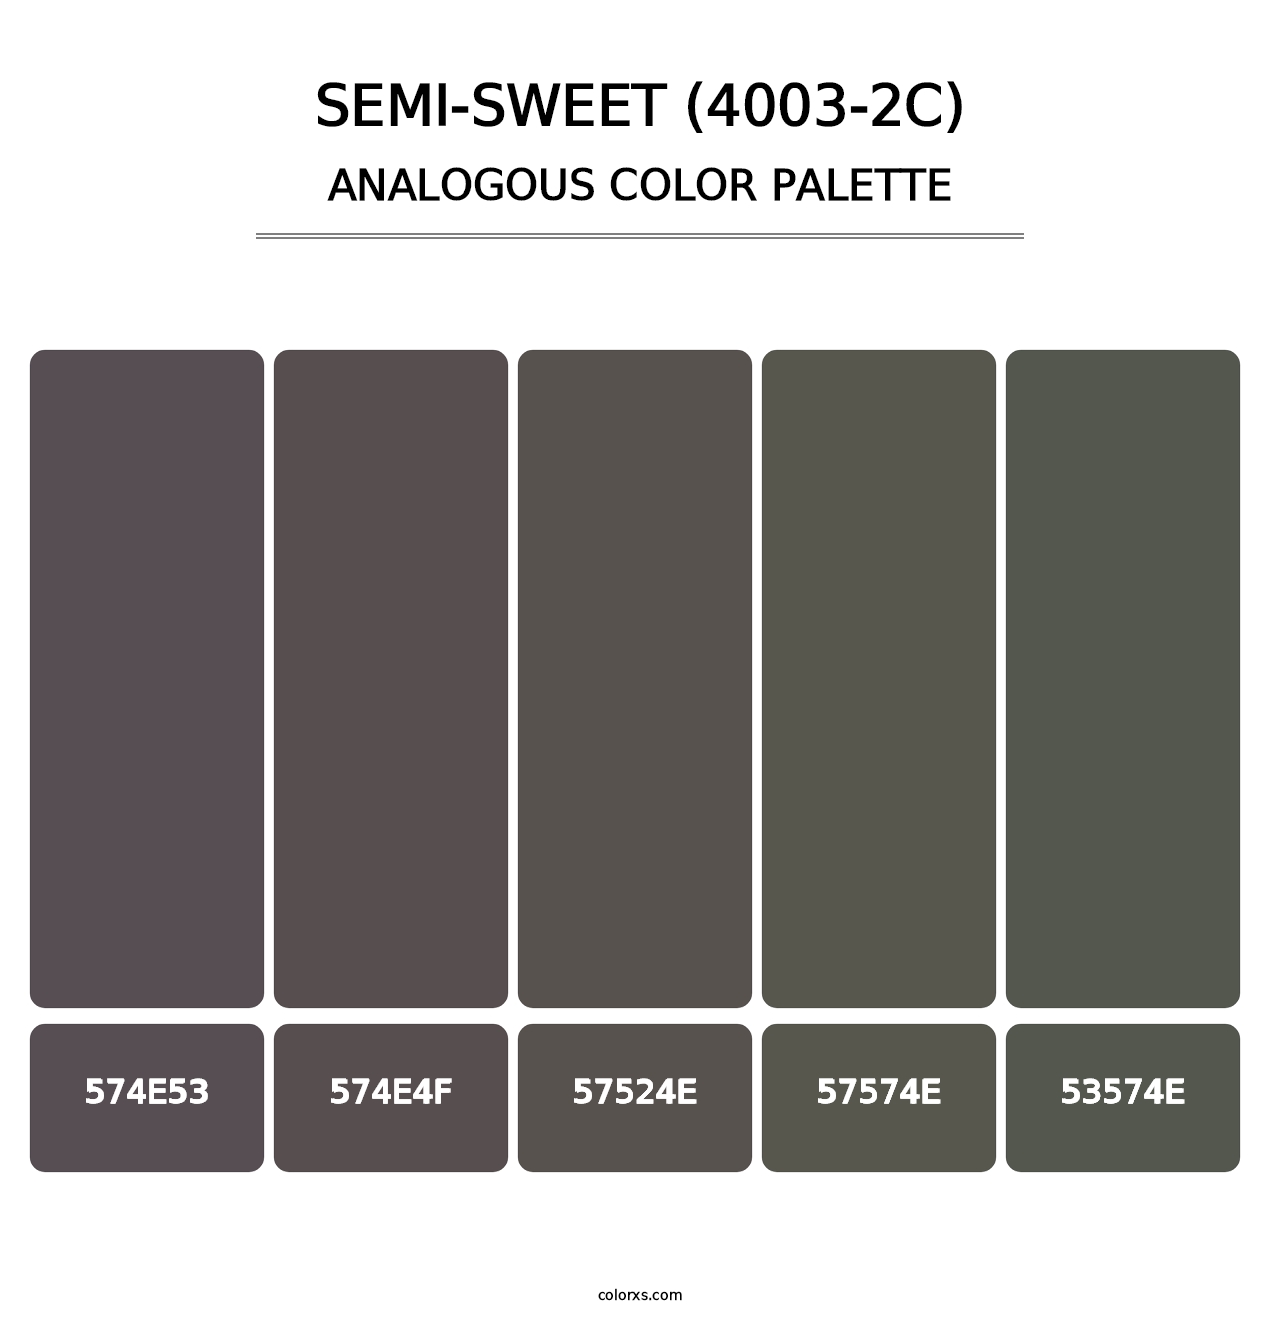 Semi-Sweet (4003-2C) - Analogous Color Palette